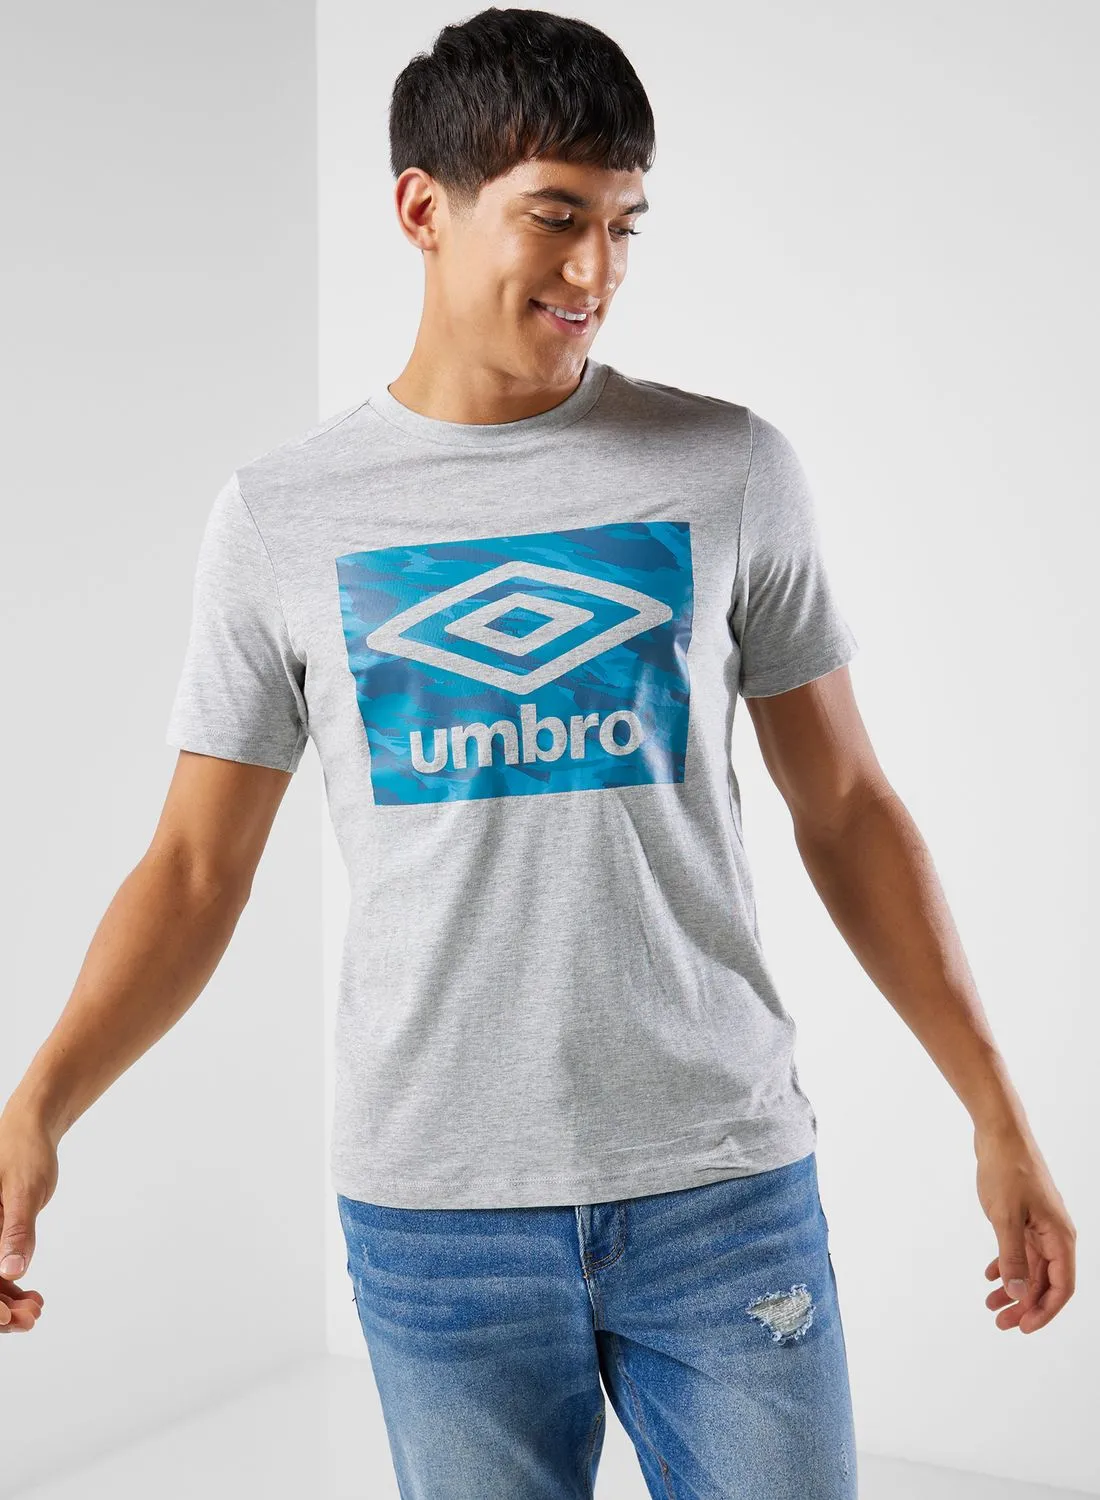 umbro Camo Box Logo Graphic T-Shirt